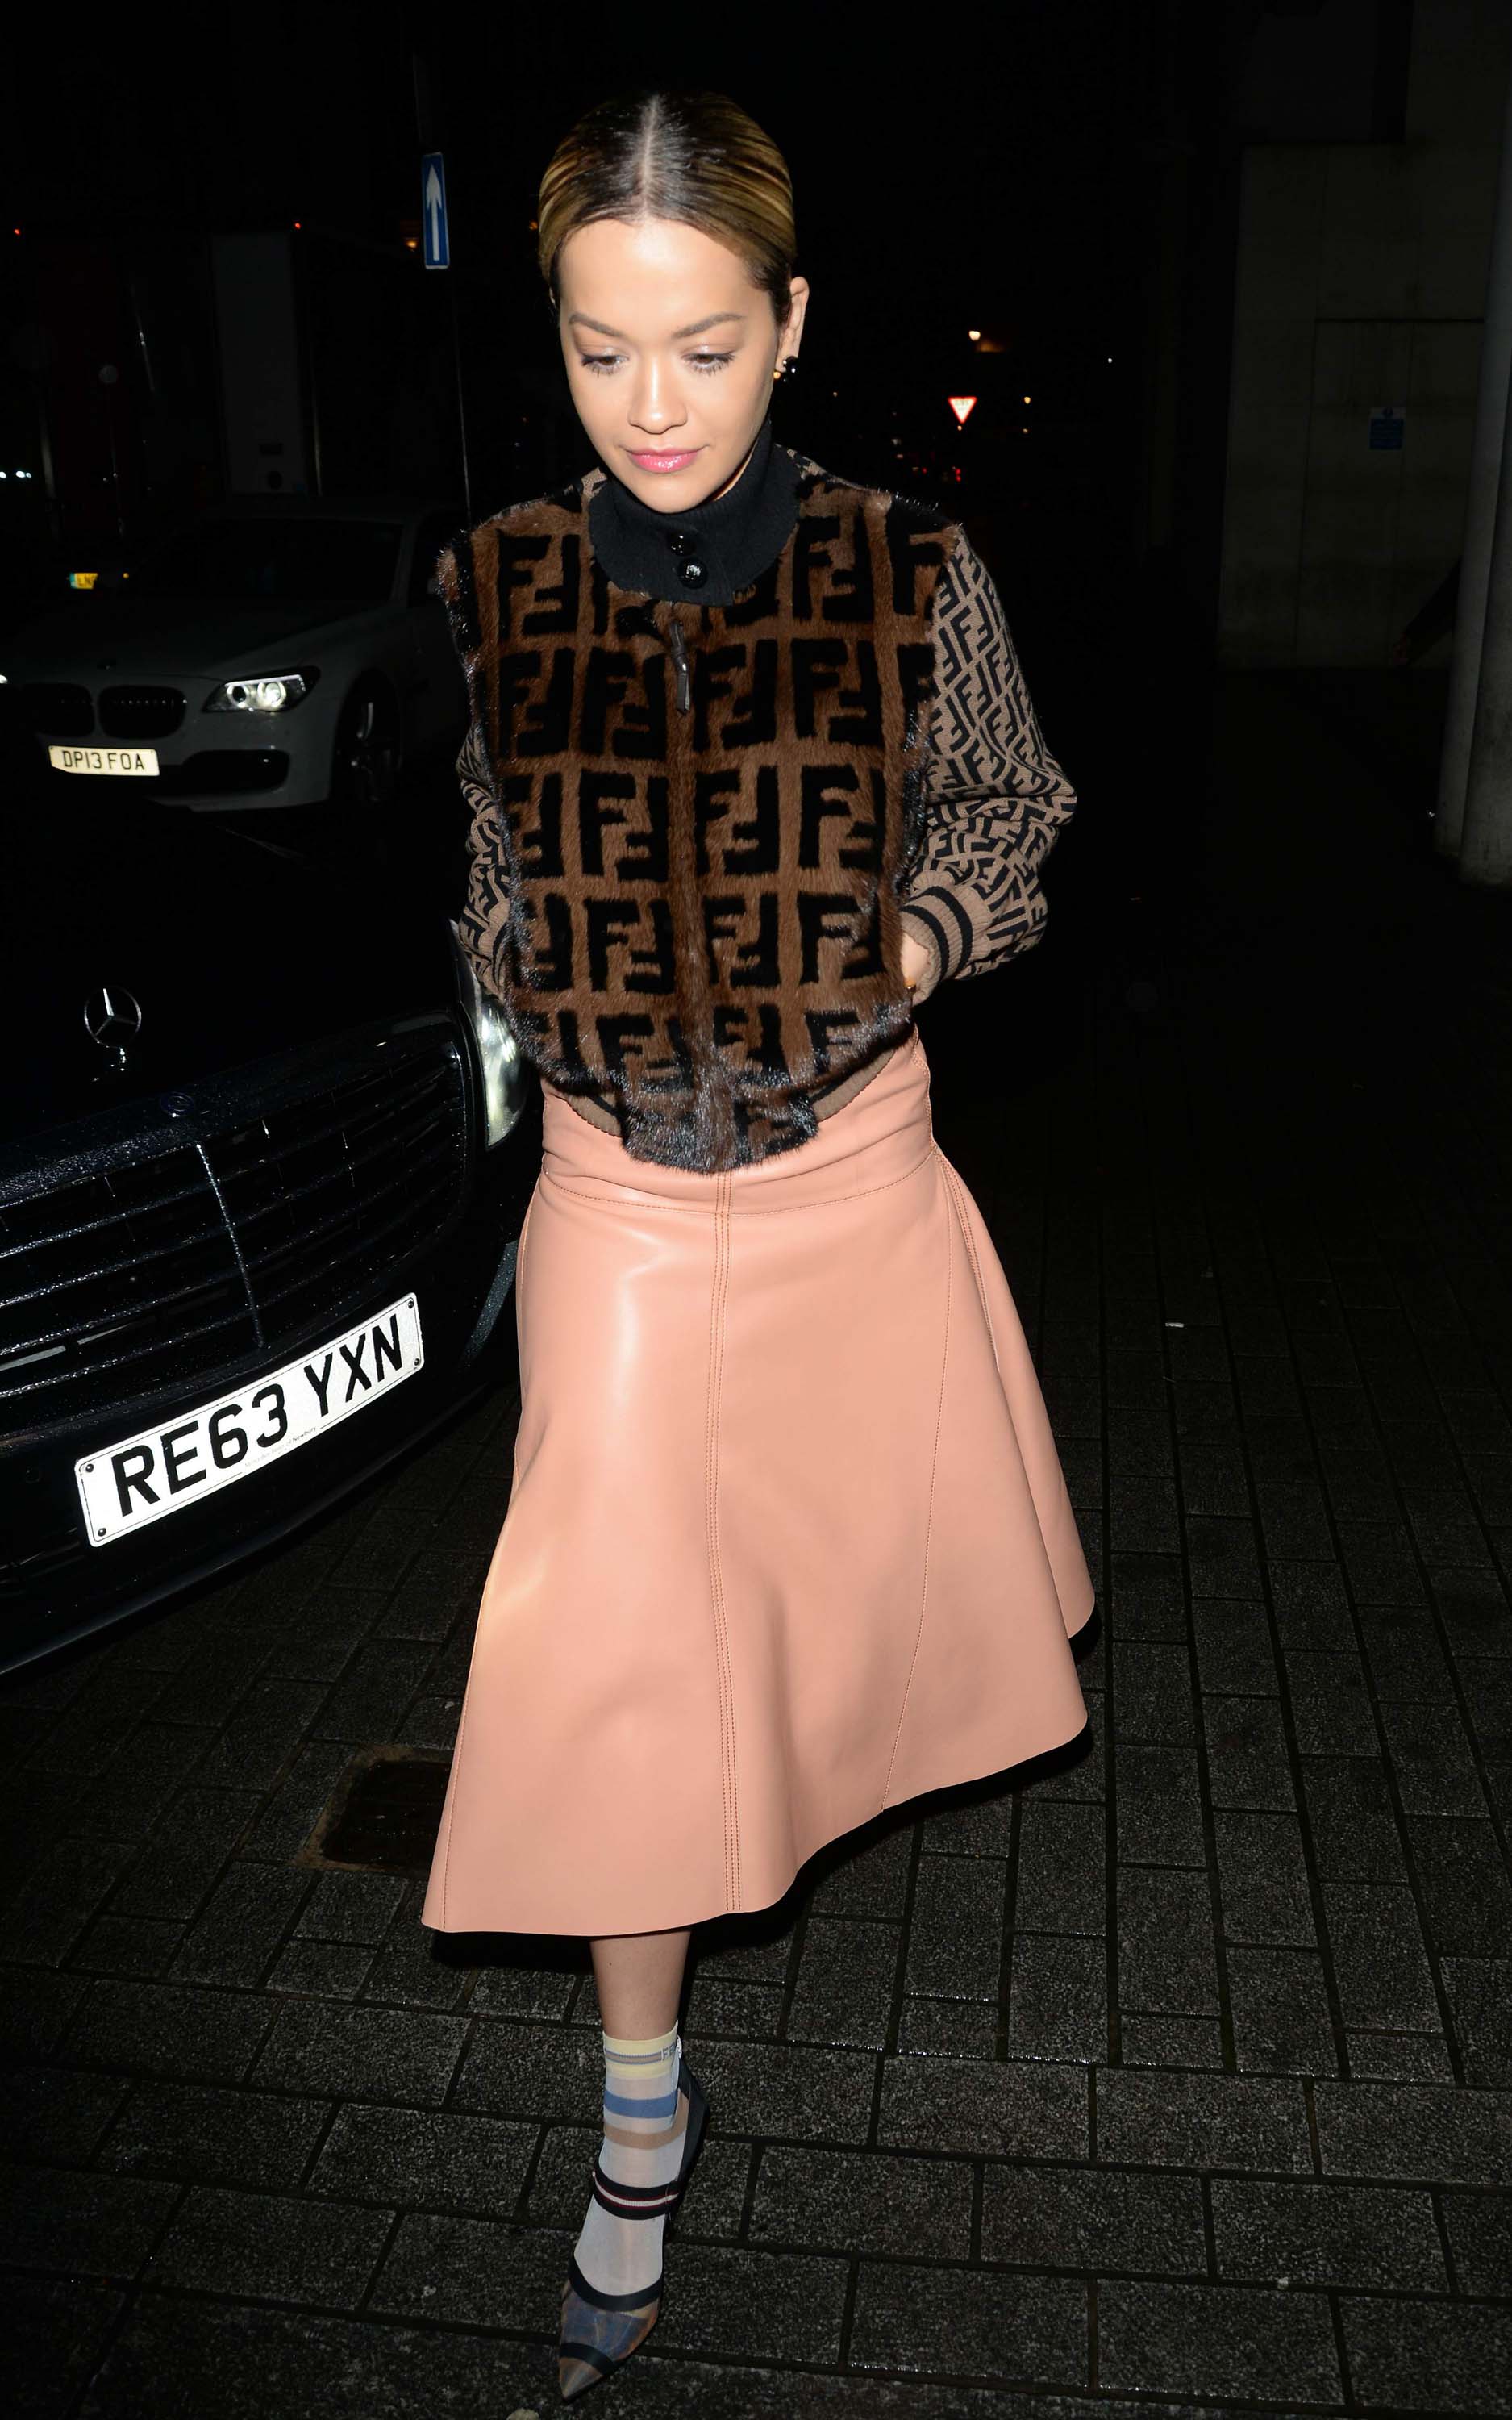 Rita Ora arrives at BBC Radio 1 Studio